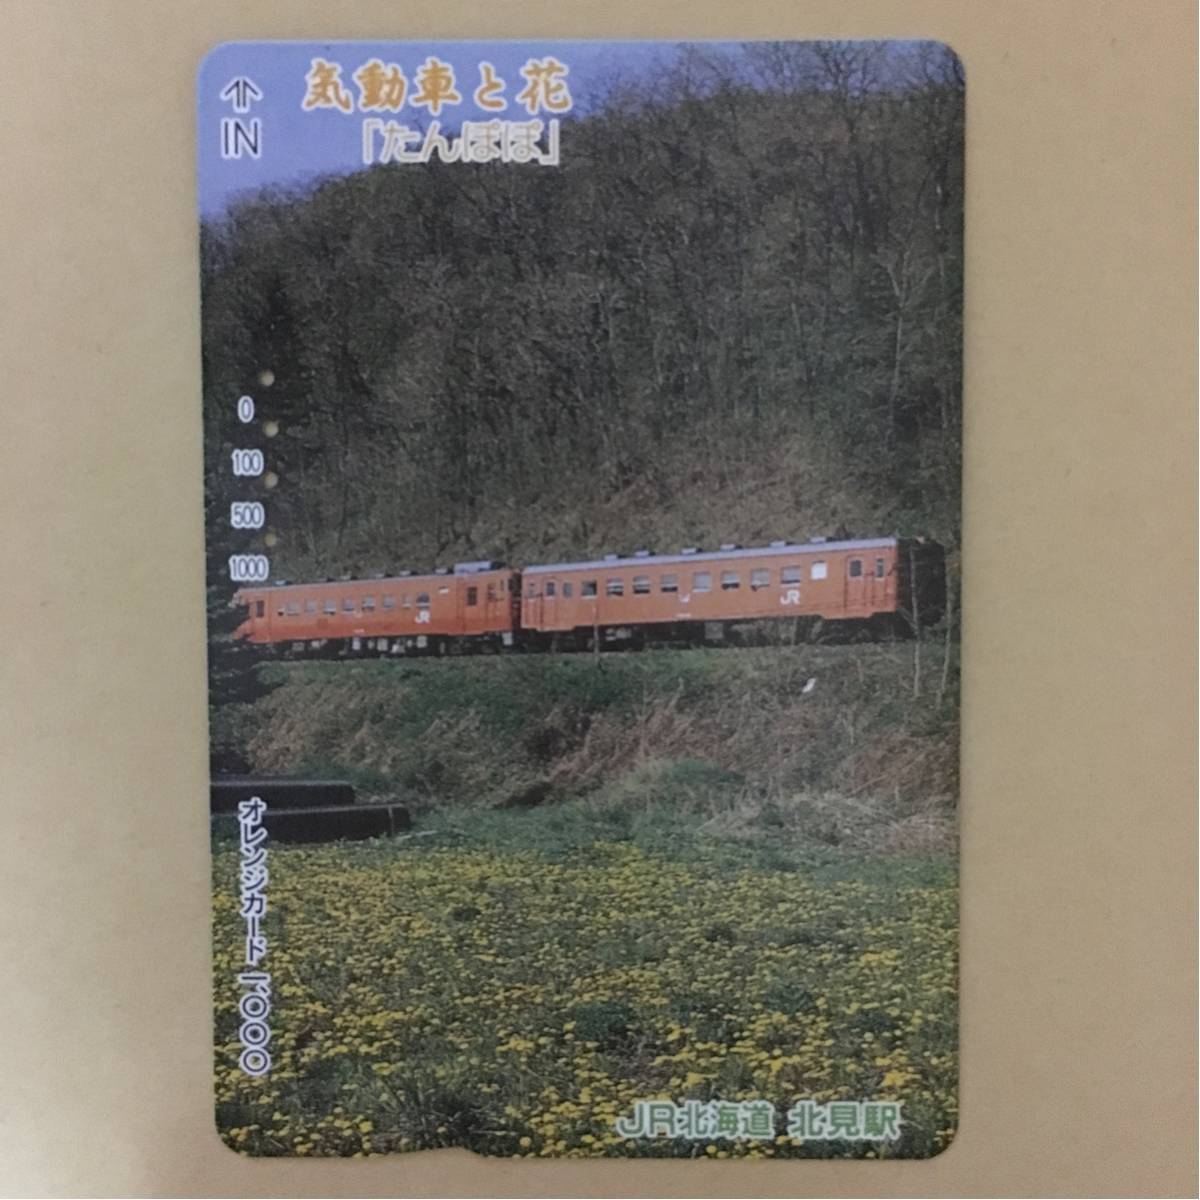 【使用済】 オレンジカード JR北海道 気動車と花「たんぽぽ」_画像1